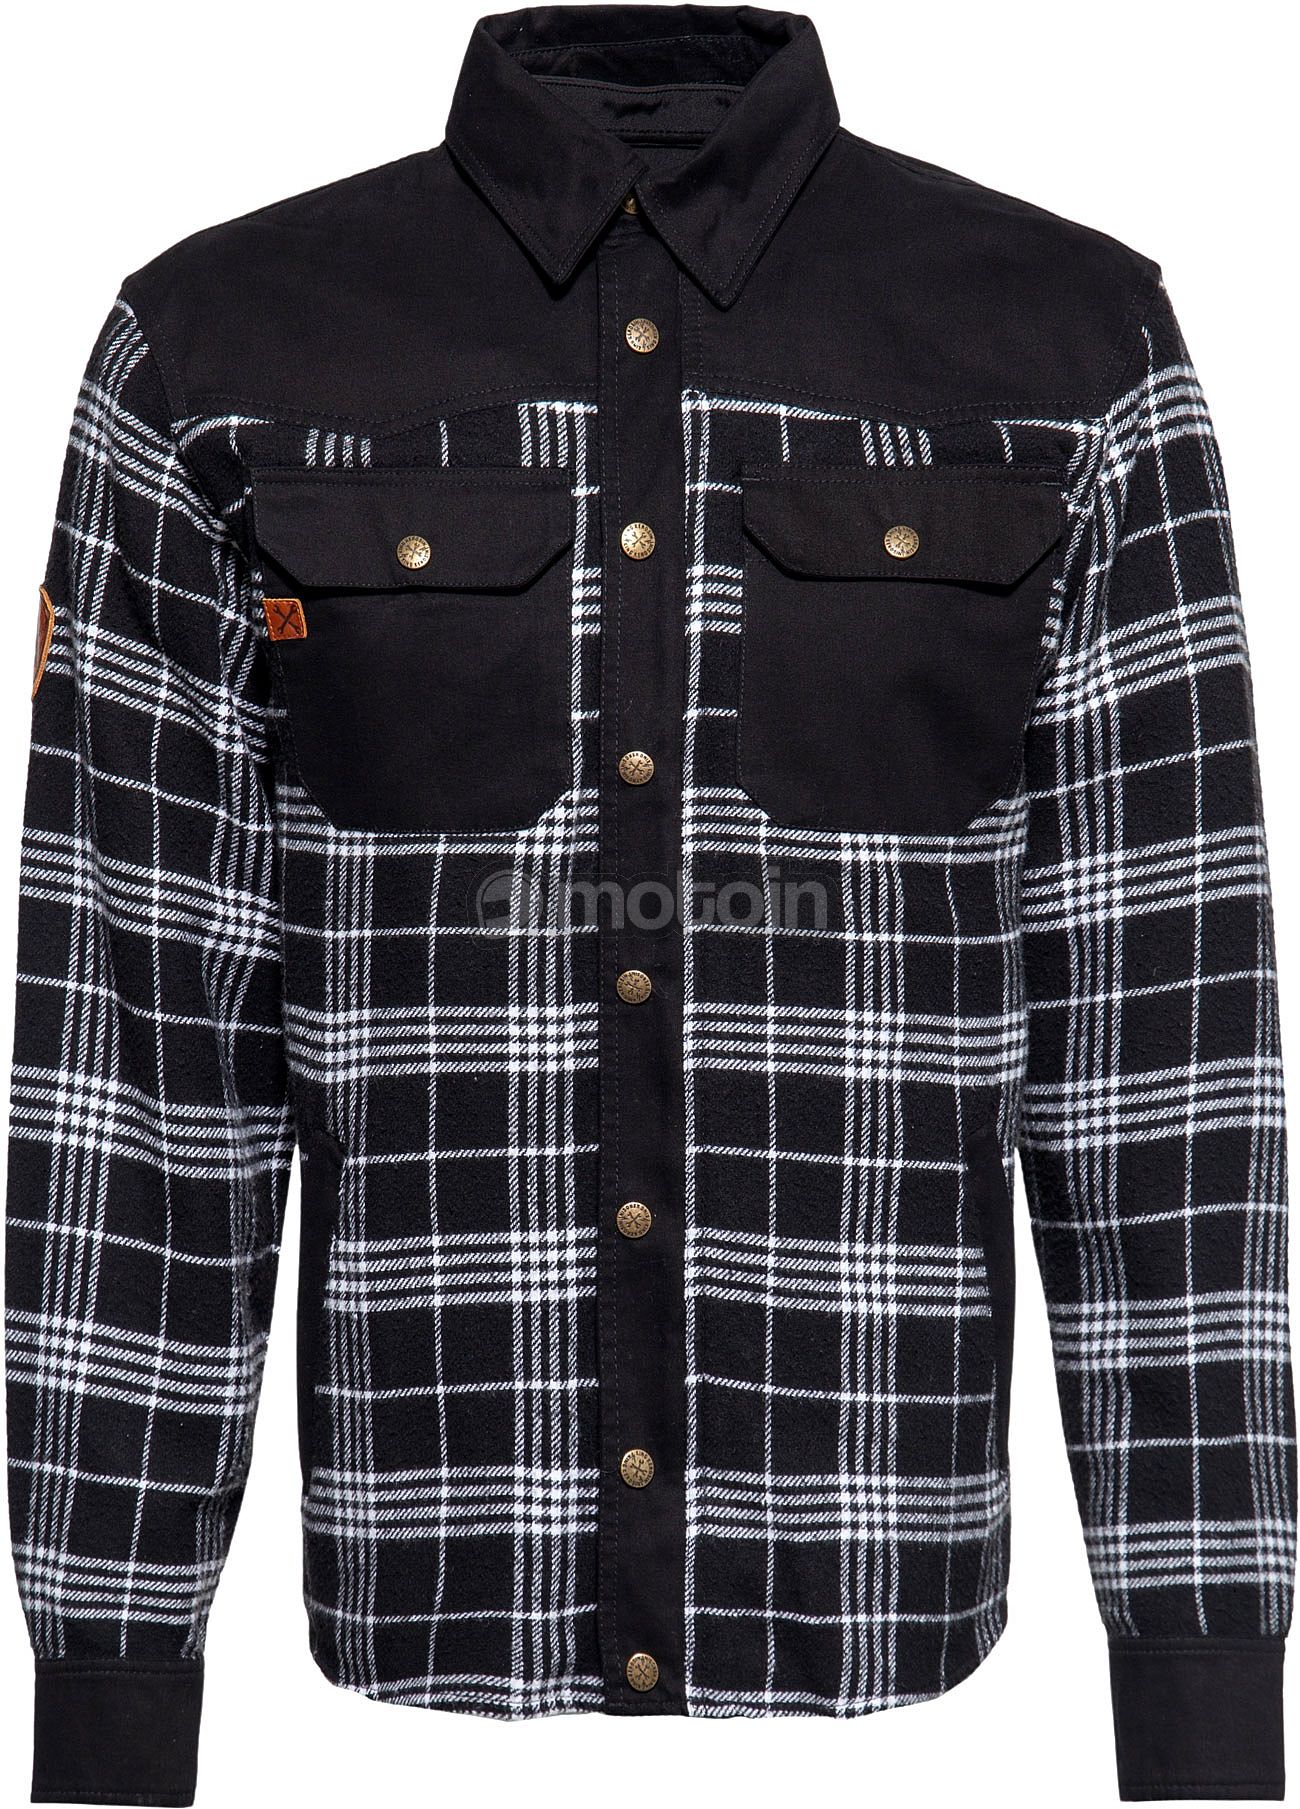 King Kerosin Motor Gear - Flannell, shirt/textile jacket